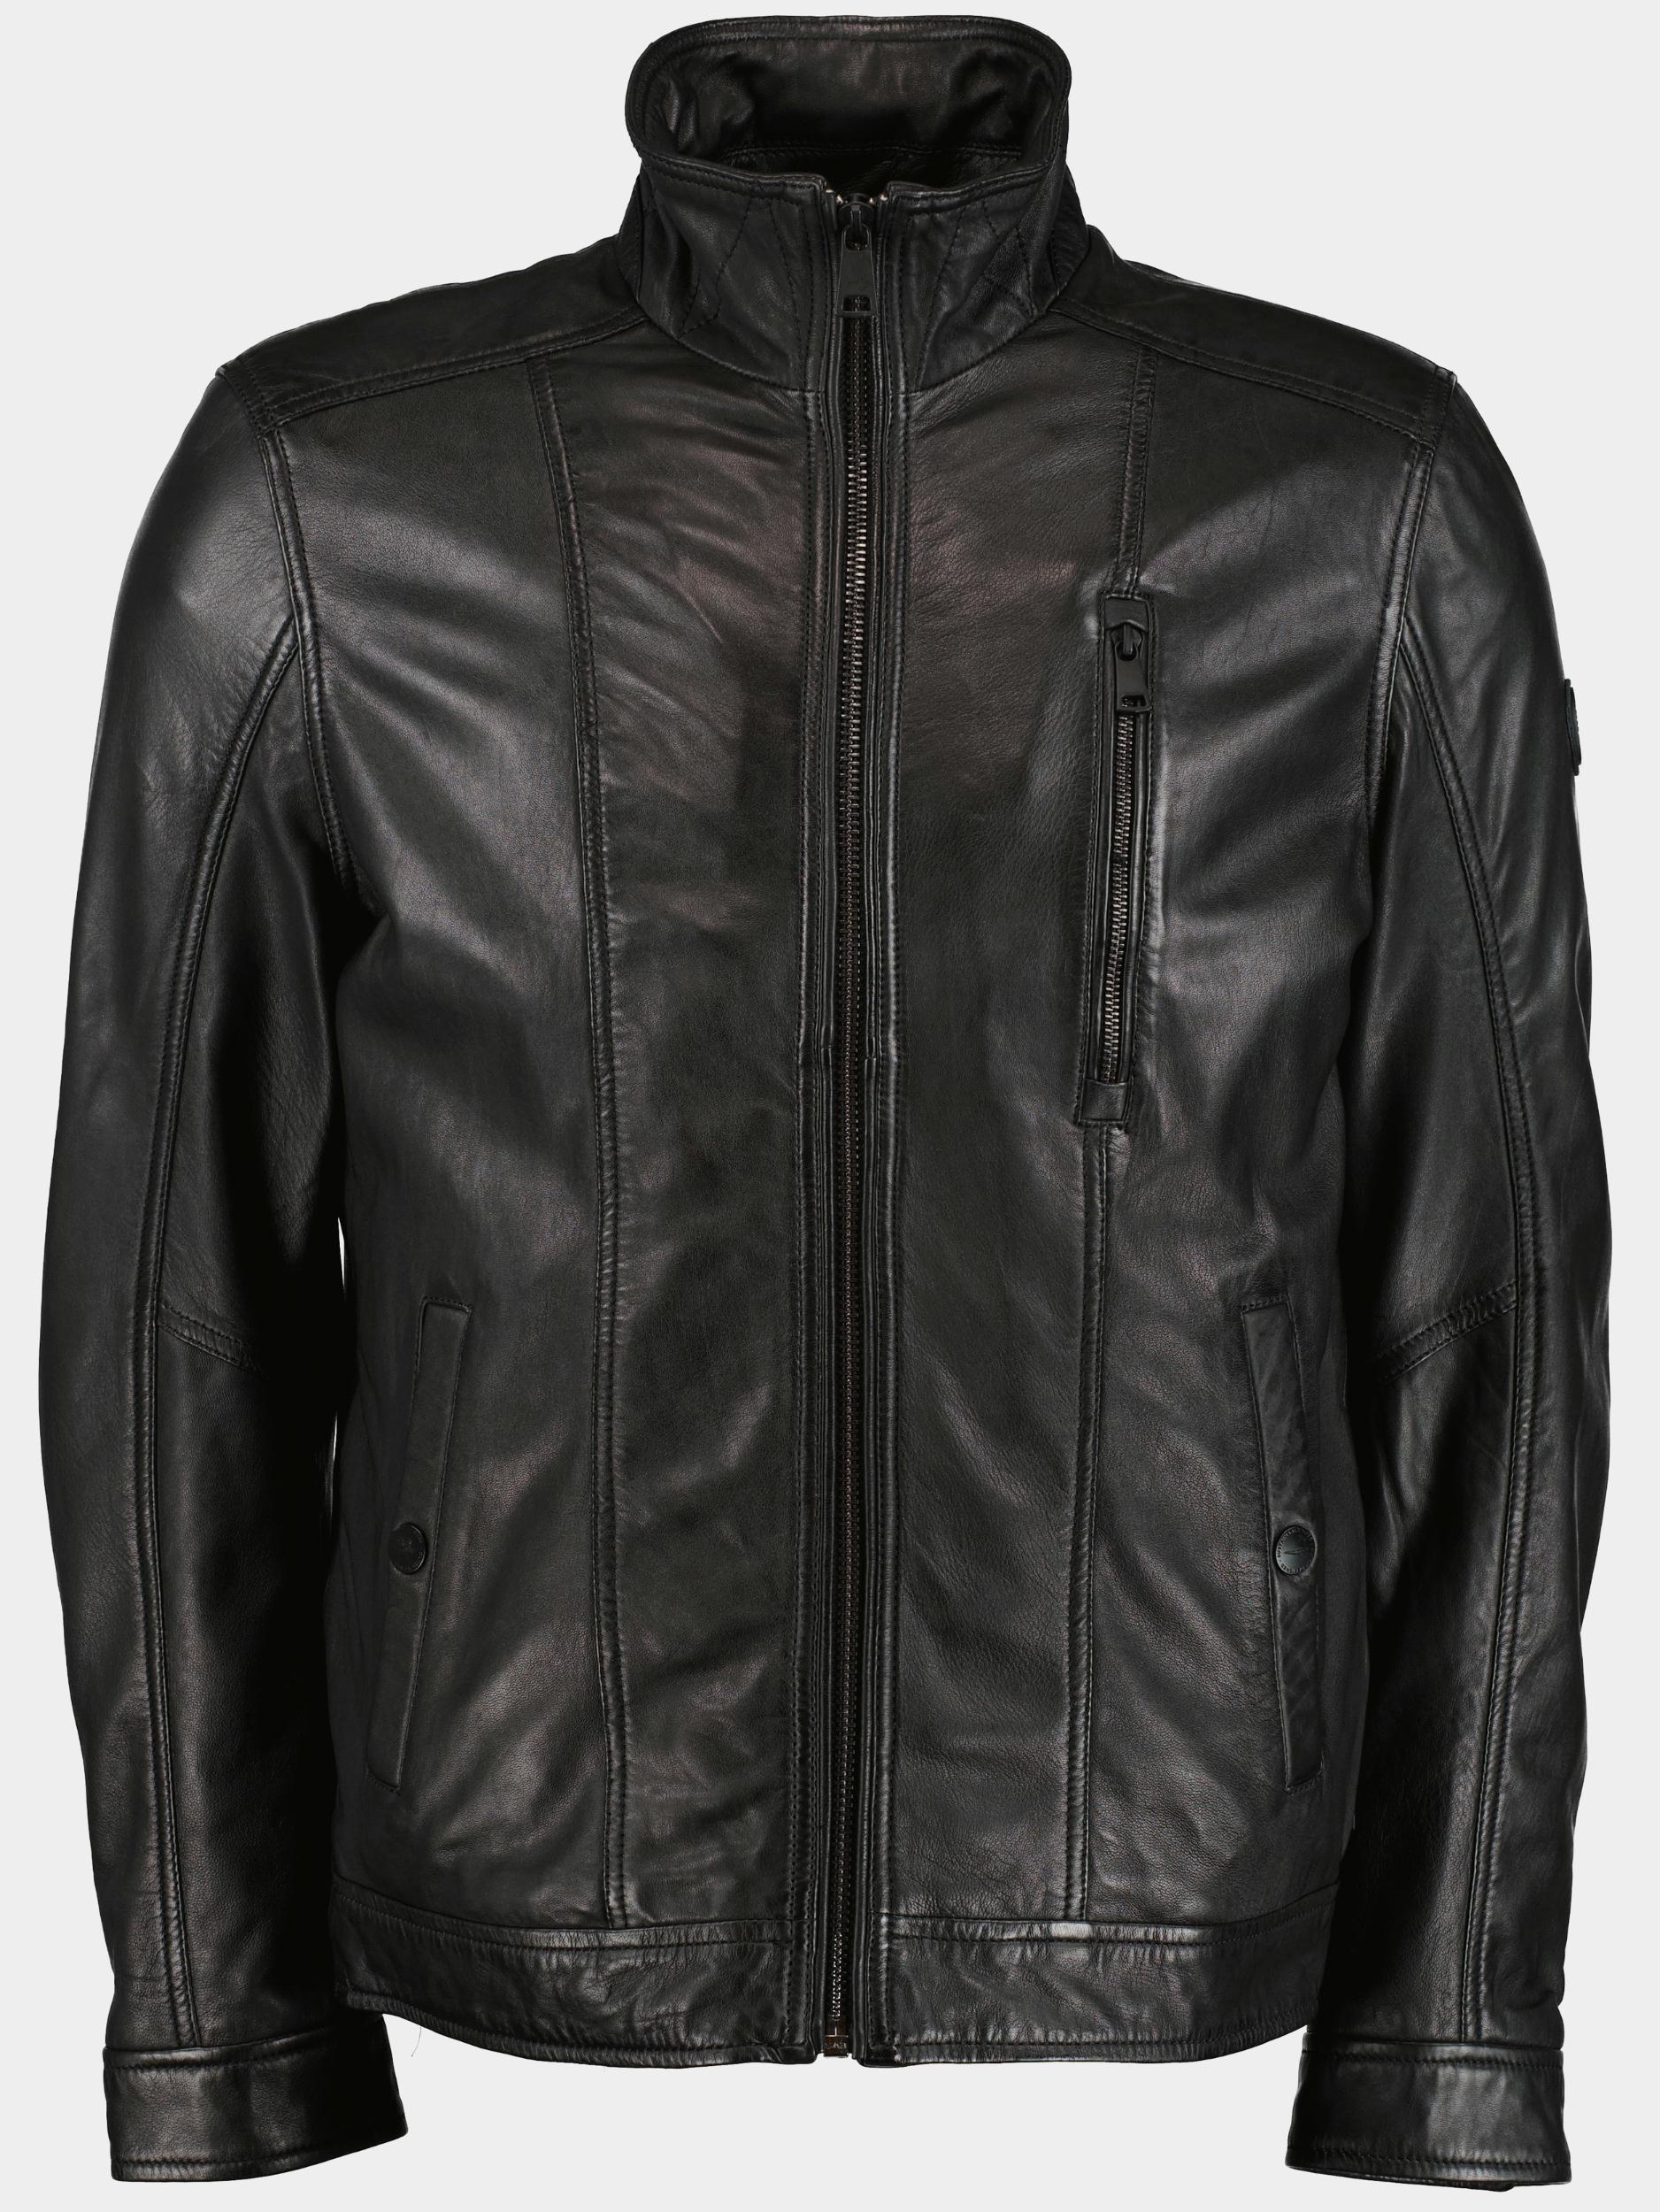 Donders 1860 Lederen jack Zwart Leather Jacket 52349.2/999